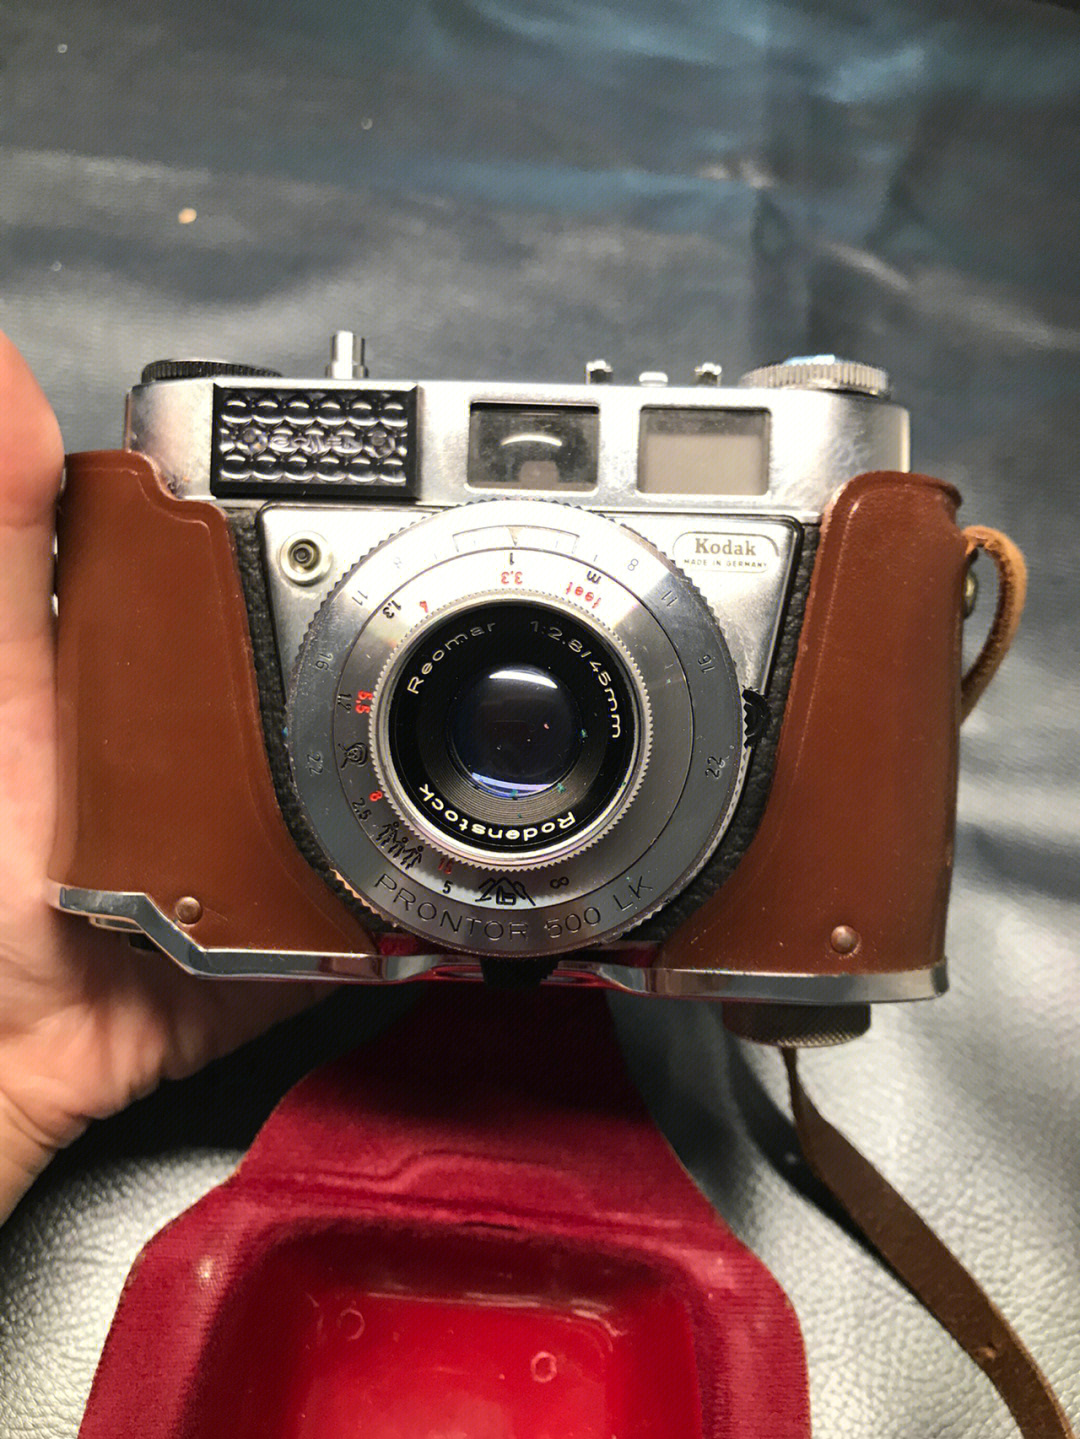 柯达第一台数码相机图片